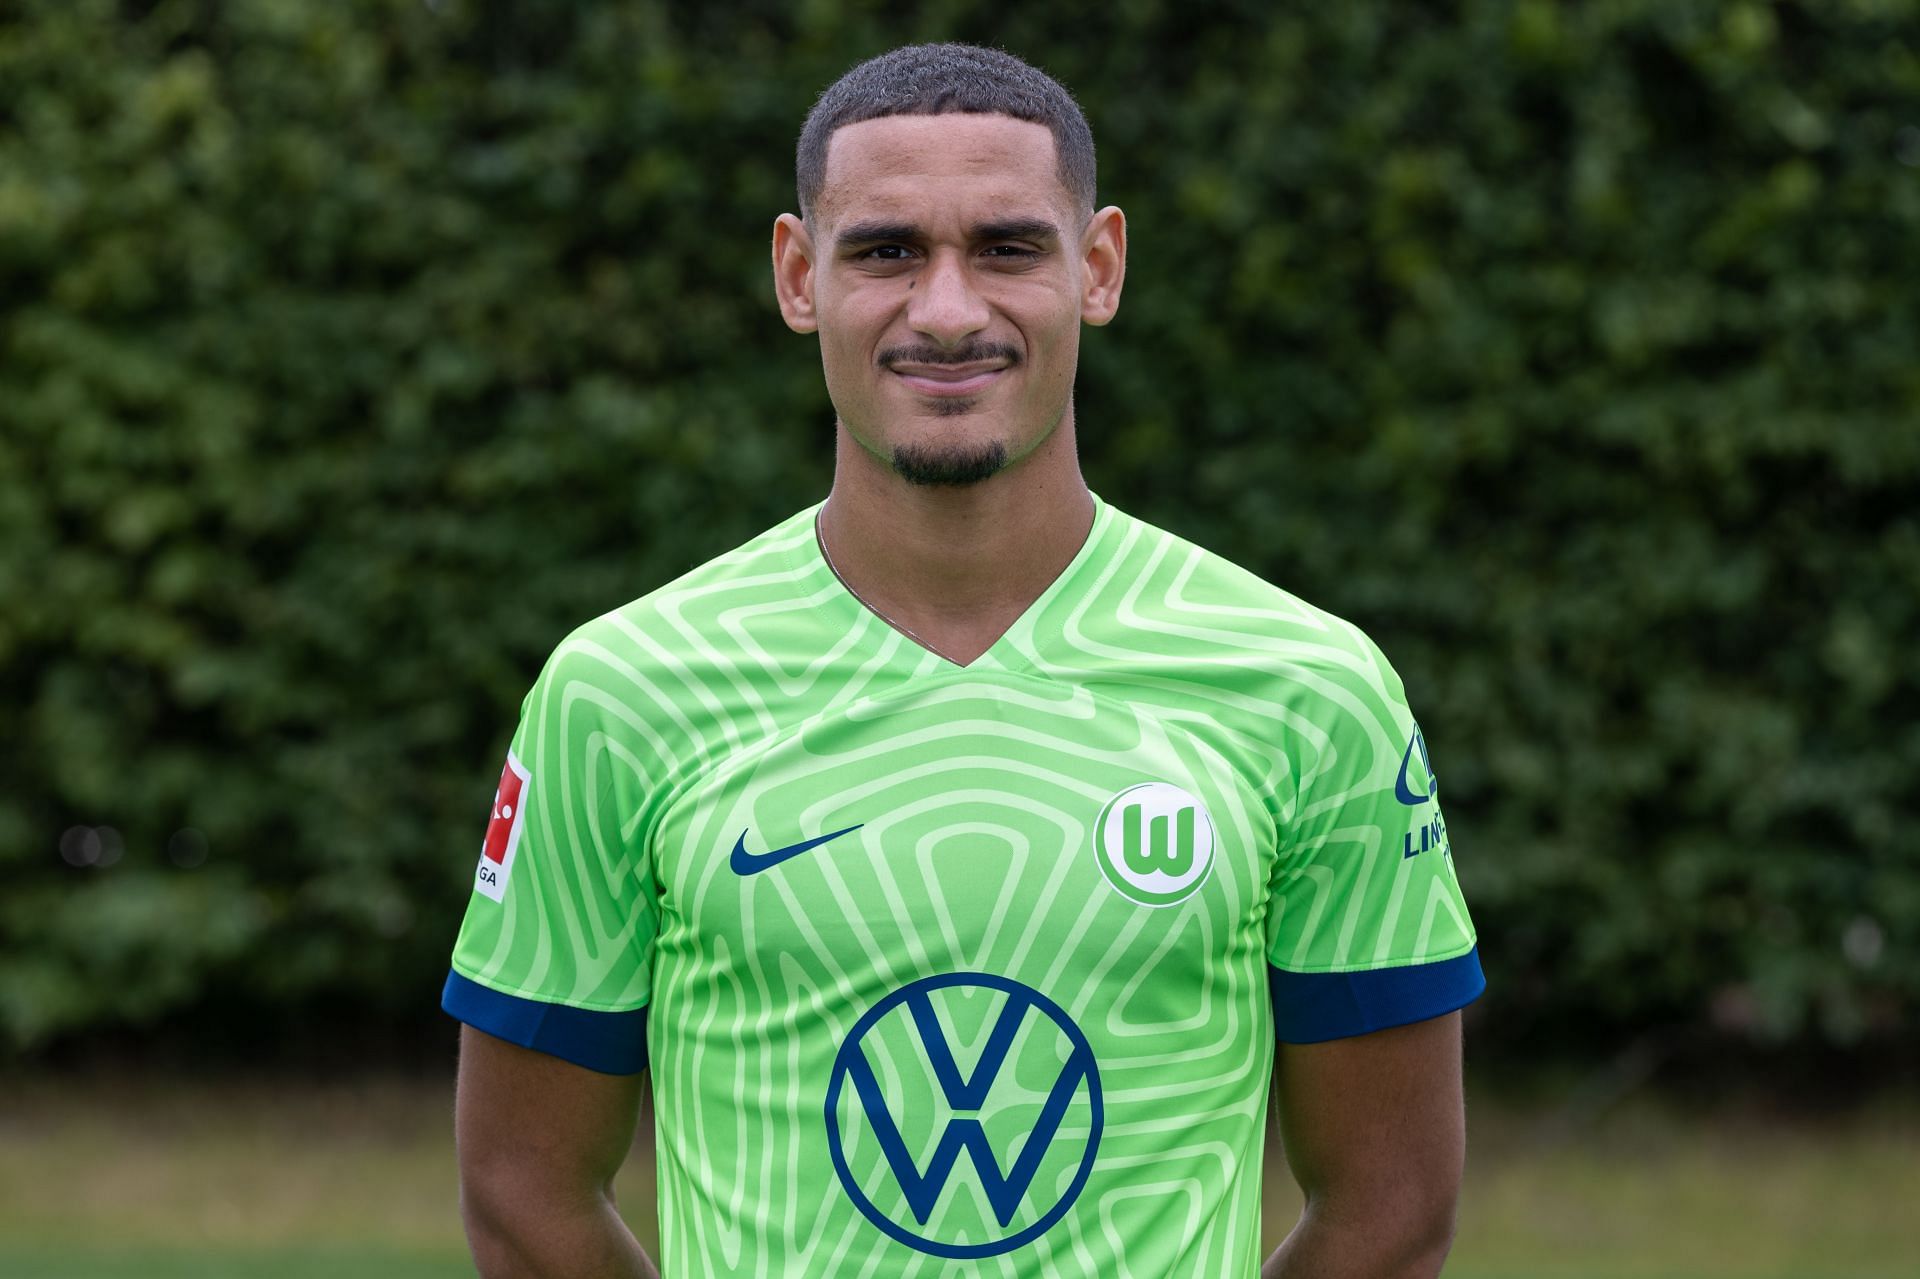 VfL Wolfsburg - Team Presentation